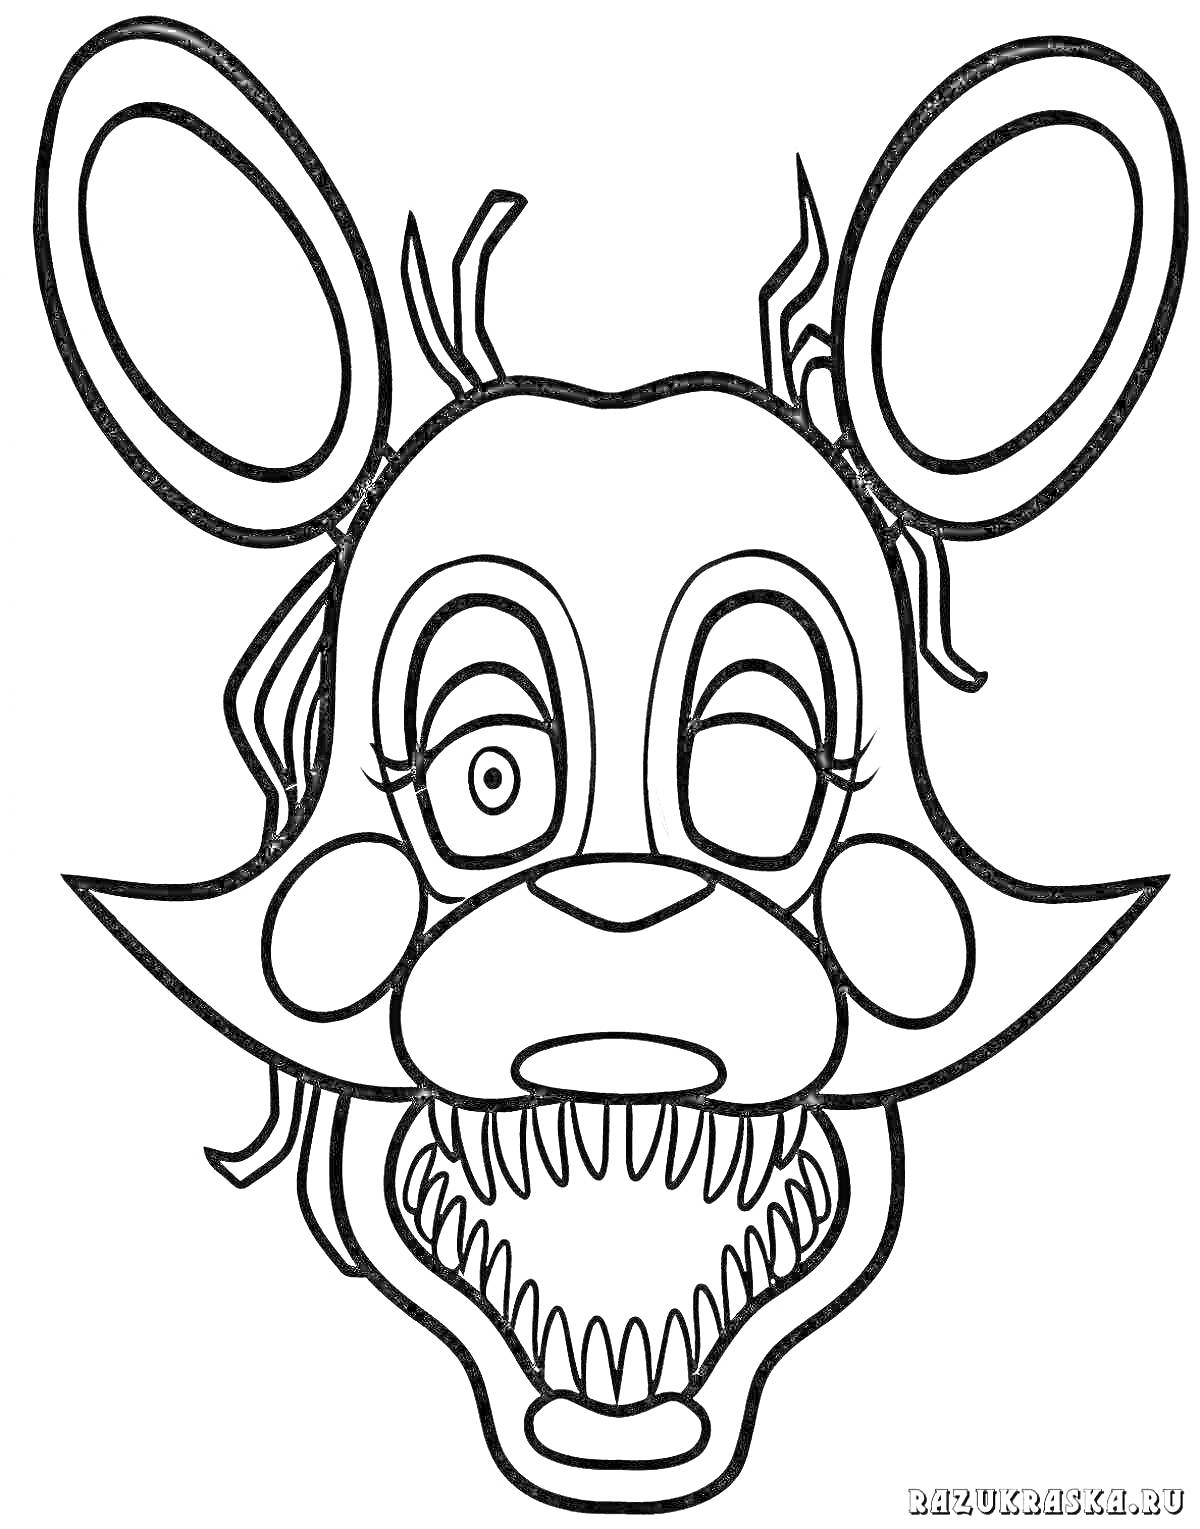 Раскраска Аниматроник с кроличьими ушами и острыми зубами, с механическими деталями